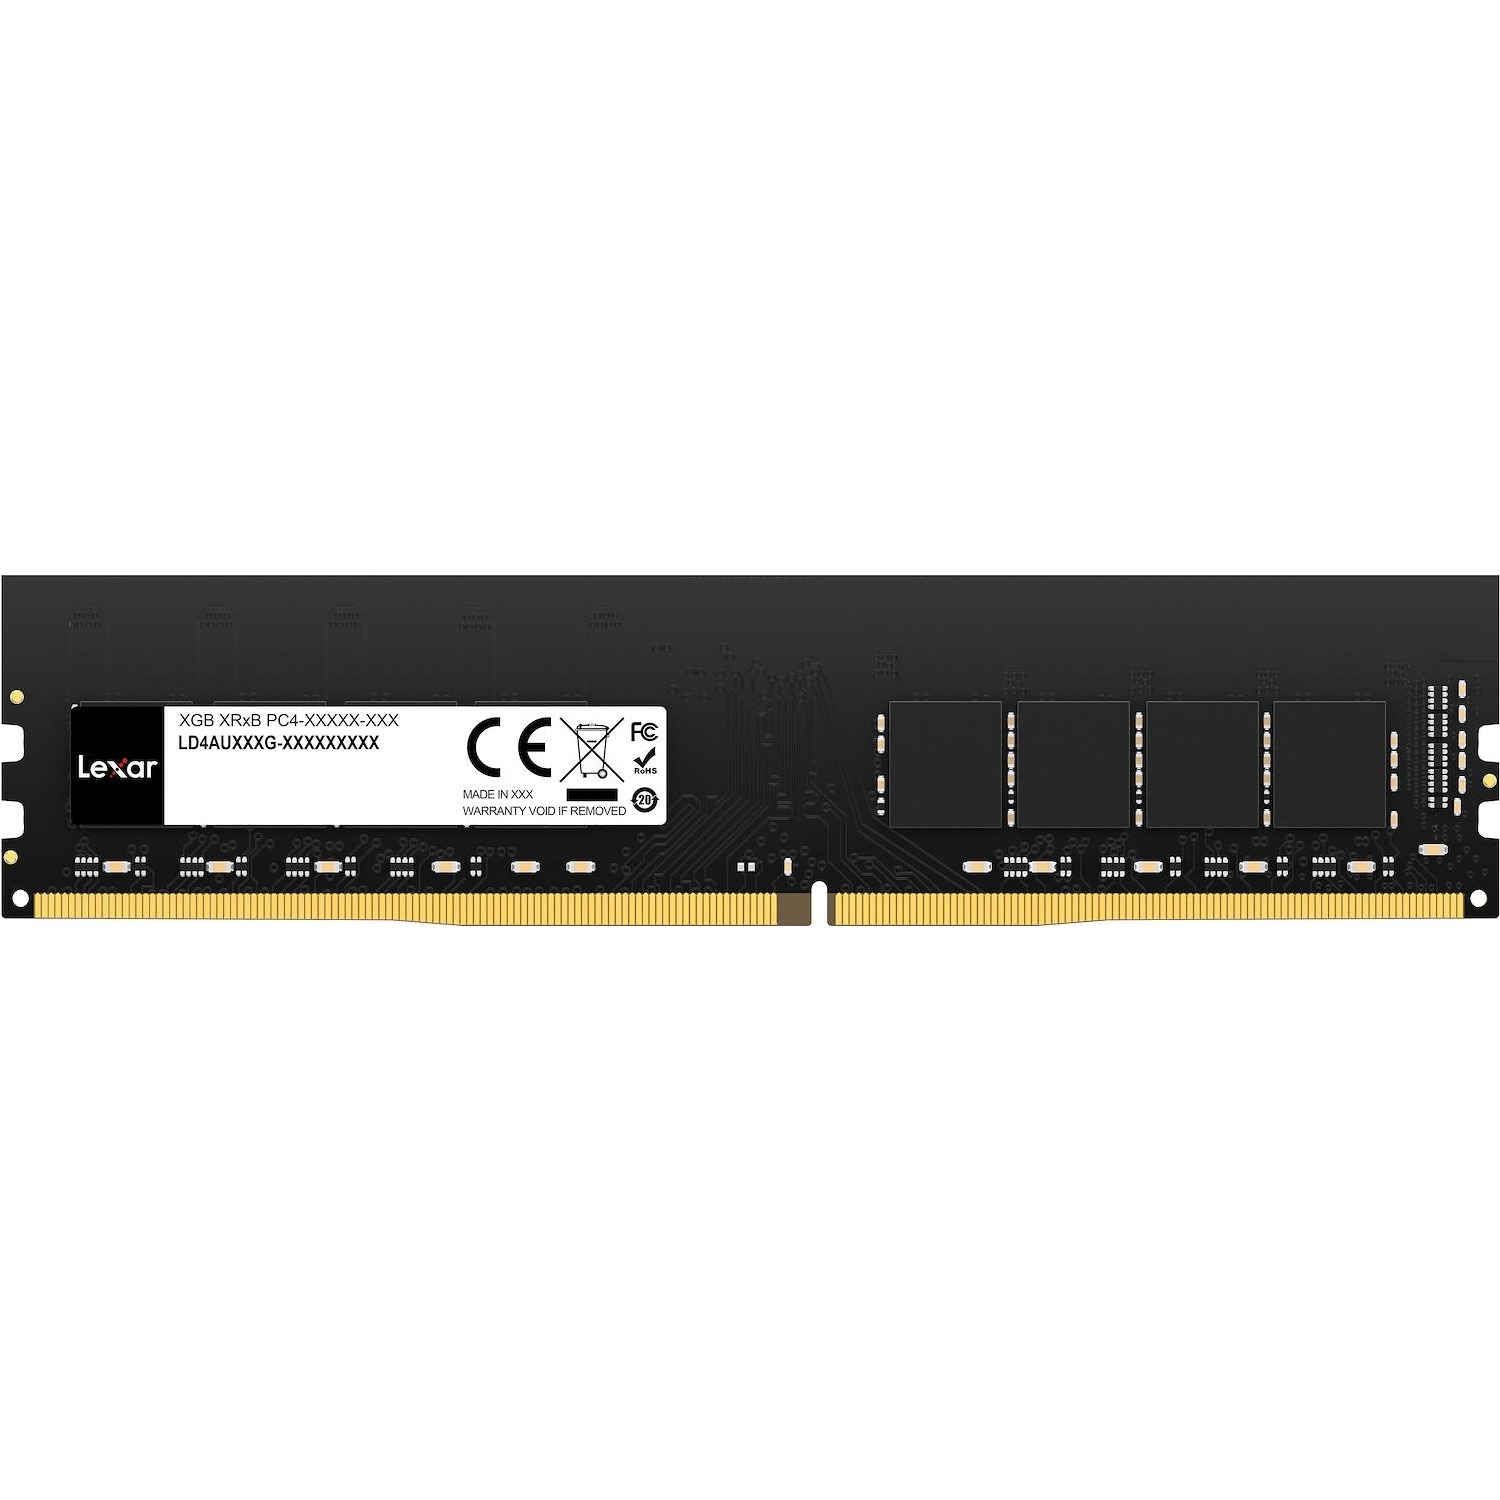 Immagine per RAM Lexar DDR4 32GB 288 PIN SO-DIMM 3200MBPS da DIMOStore